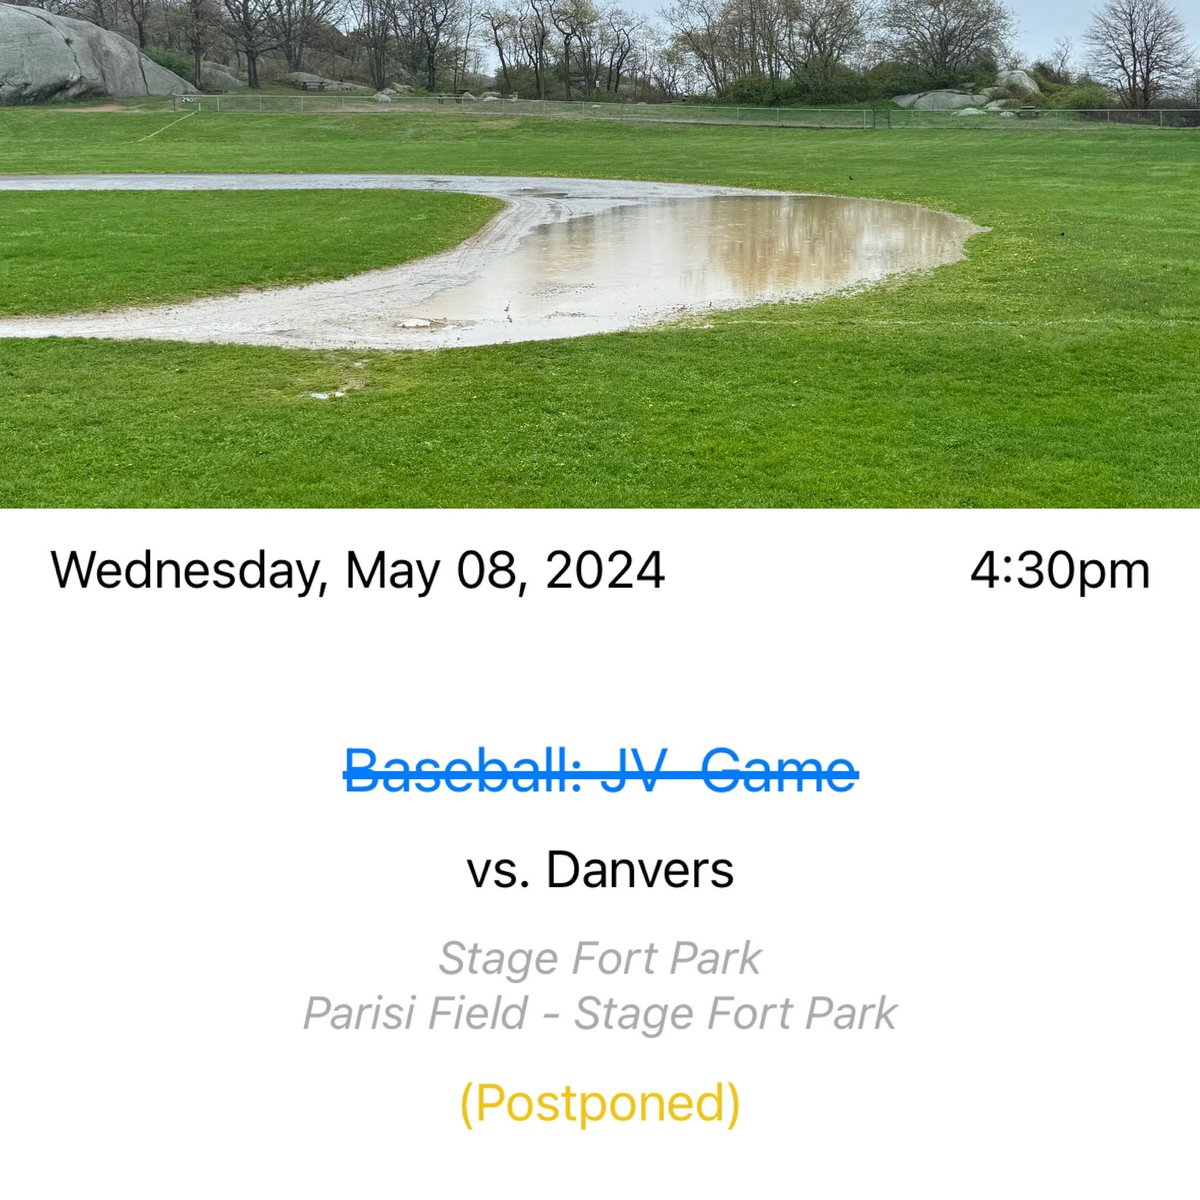 JV baseball postponed today, varsity baseball to be determined. @GDTSports @NickGiannino_GT